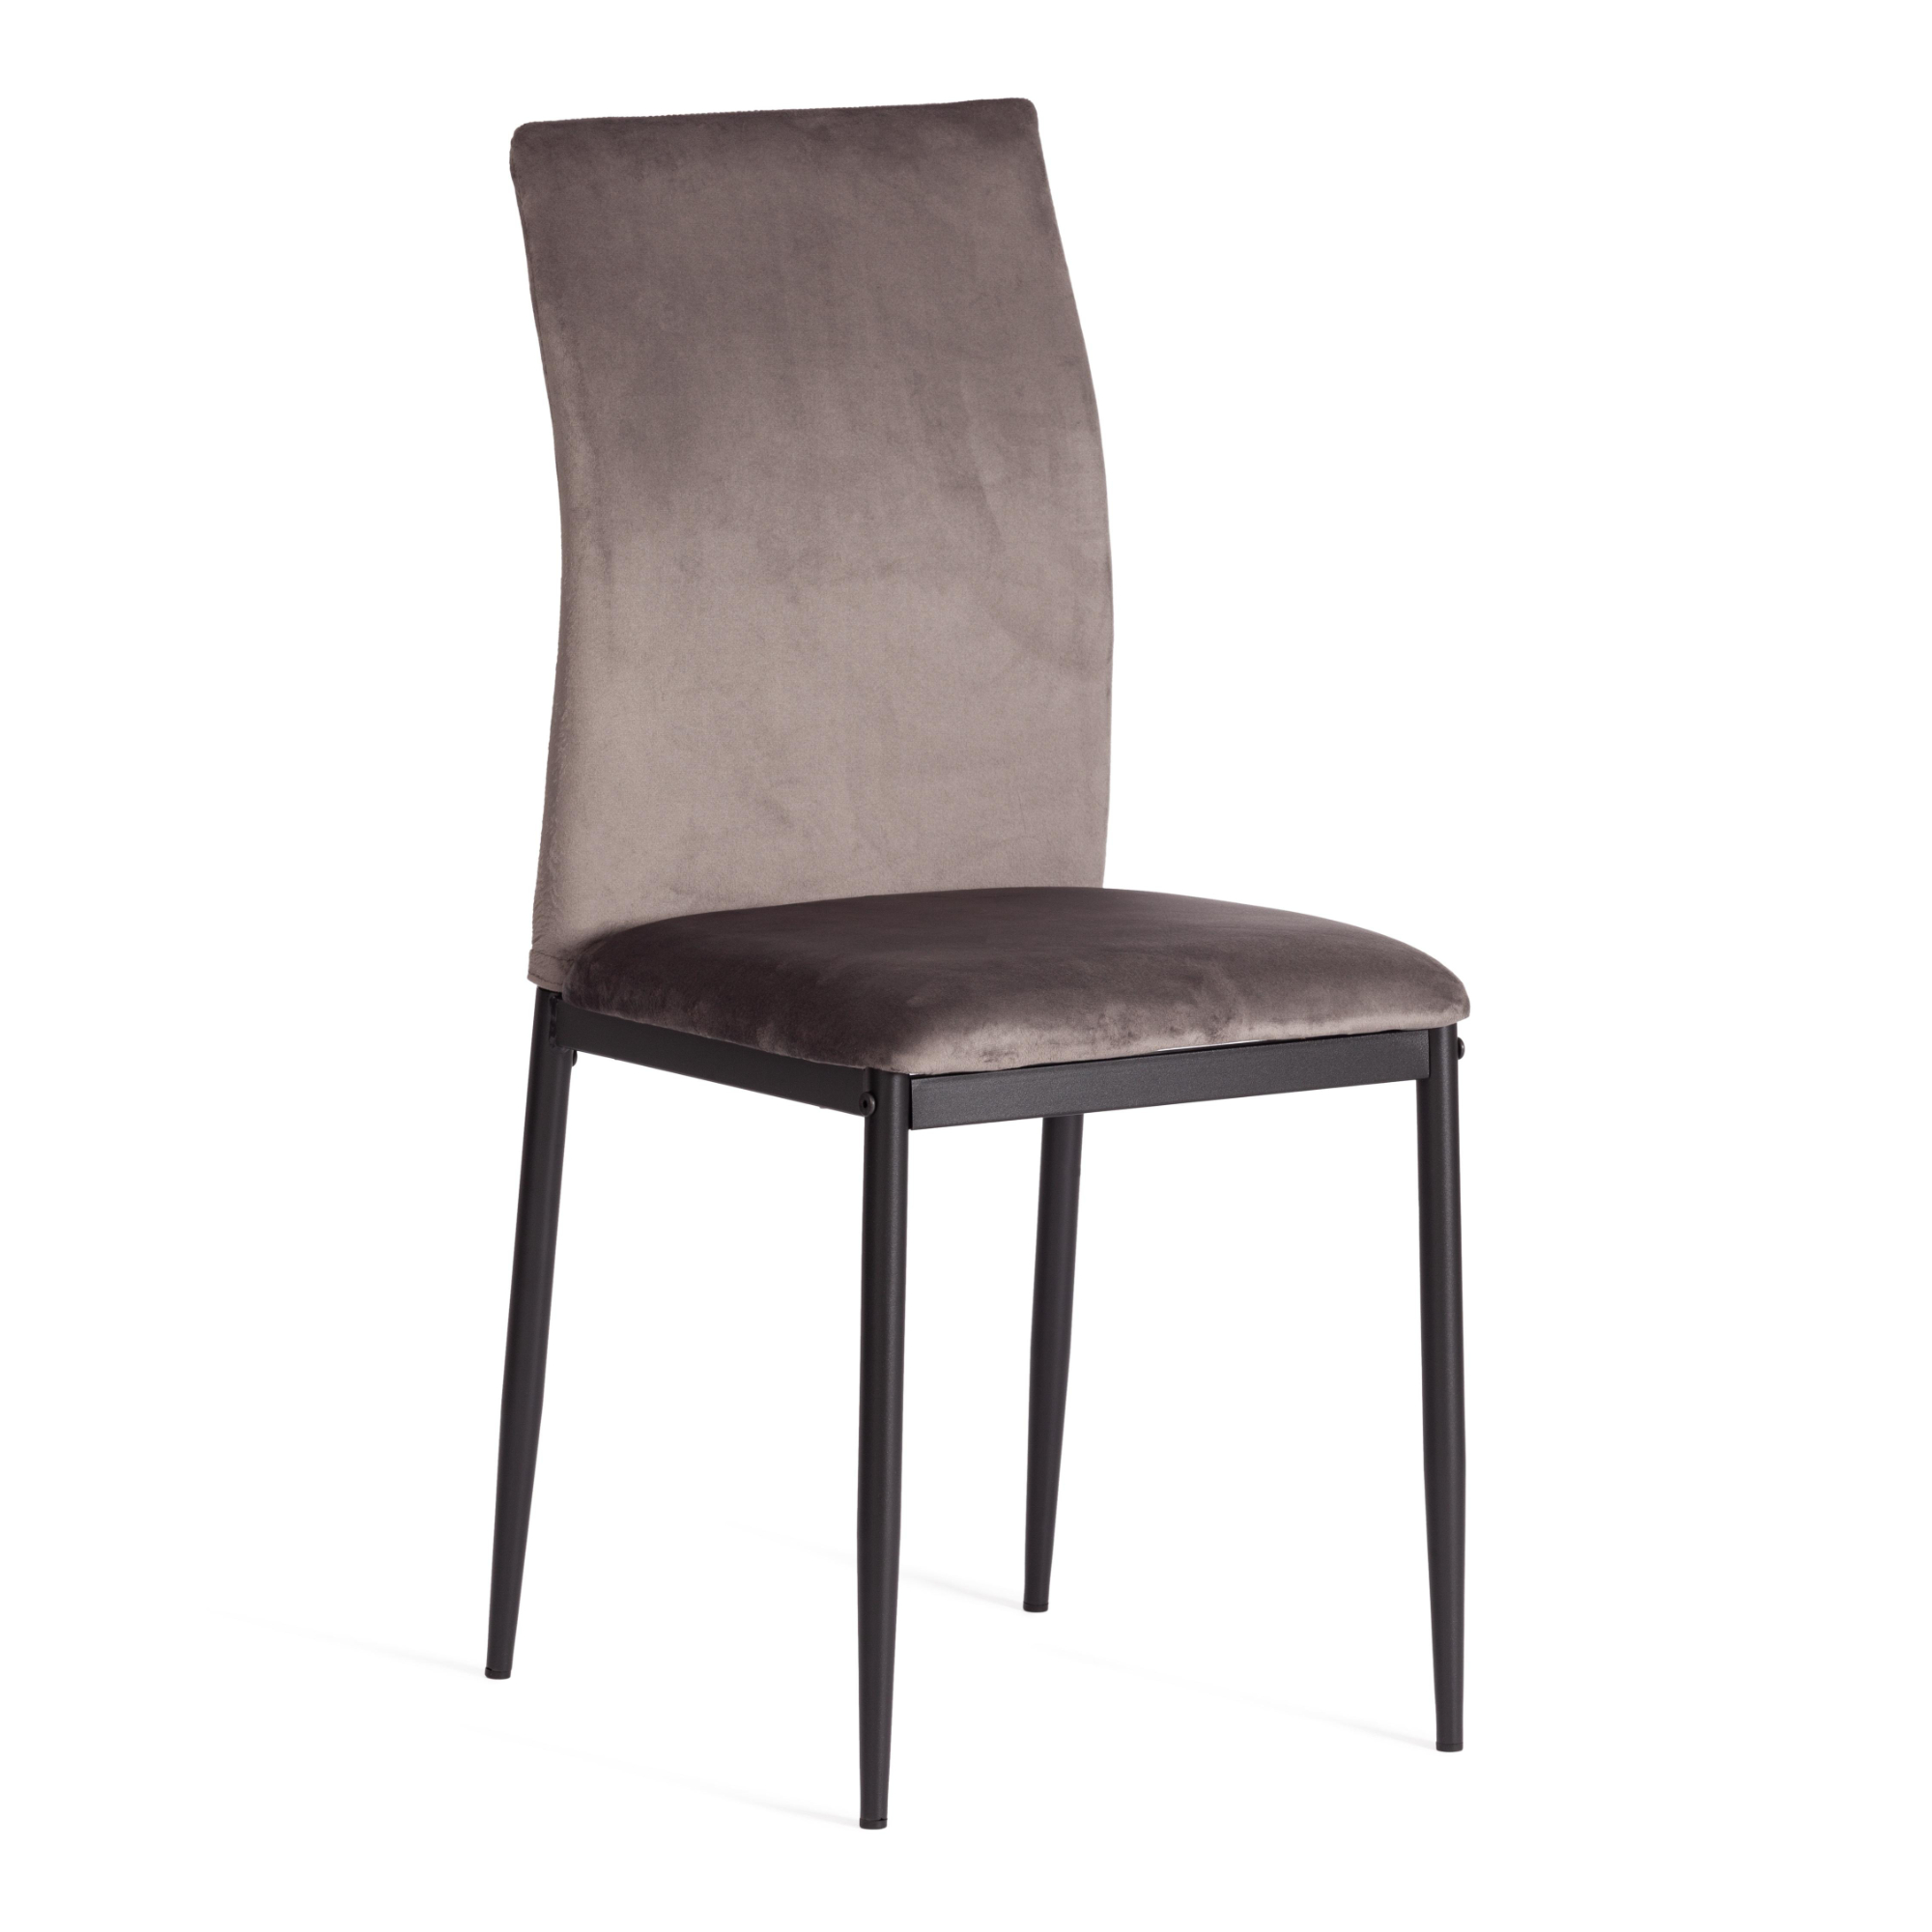 стул пластиковый усиленный стекловолокном для дома и спальни кабинета гостиной комбинированный стол и стул маленький низкий стул для ры Стул ТС Capri темно-серый вельвет 49,5х41х93,5 см